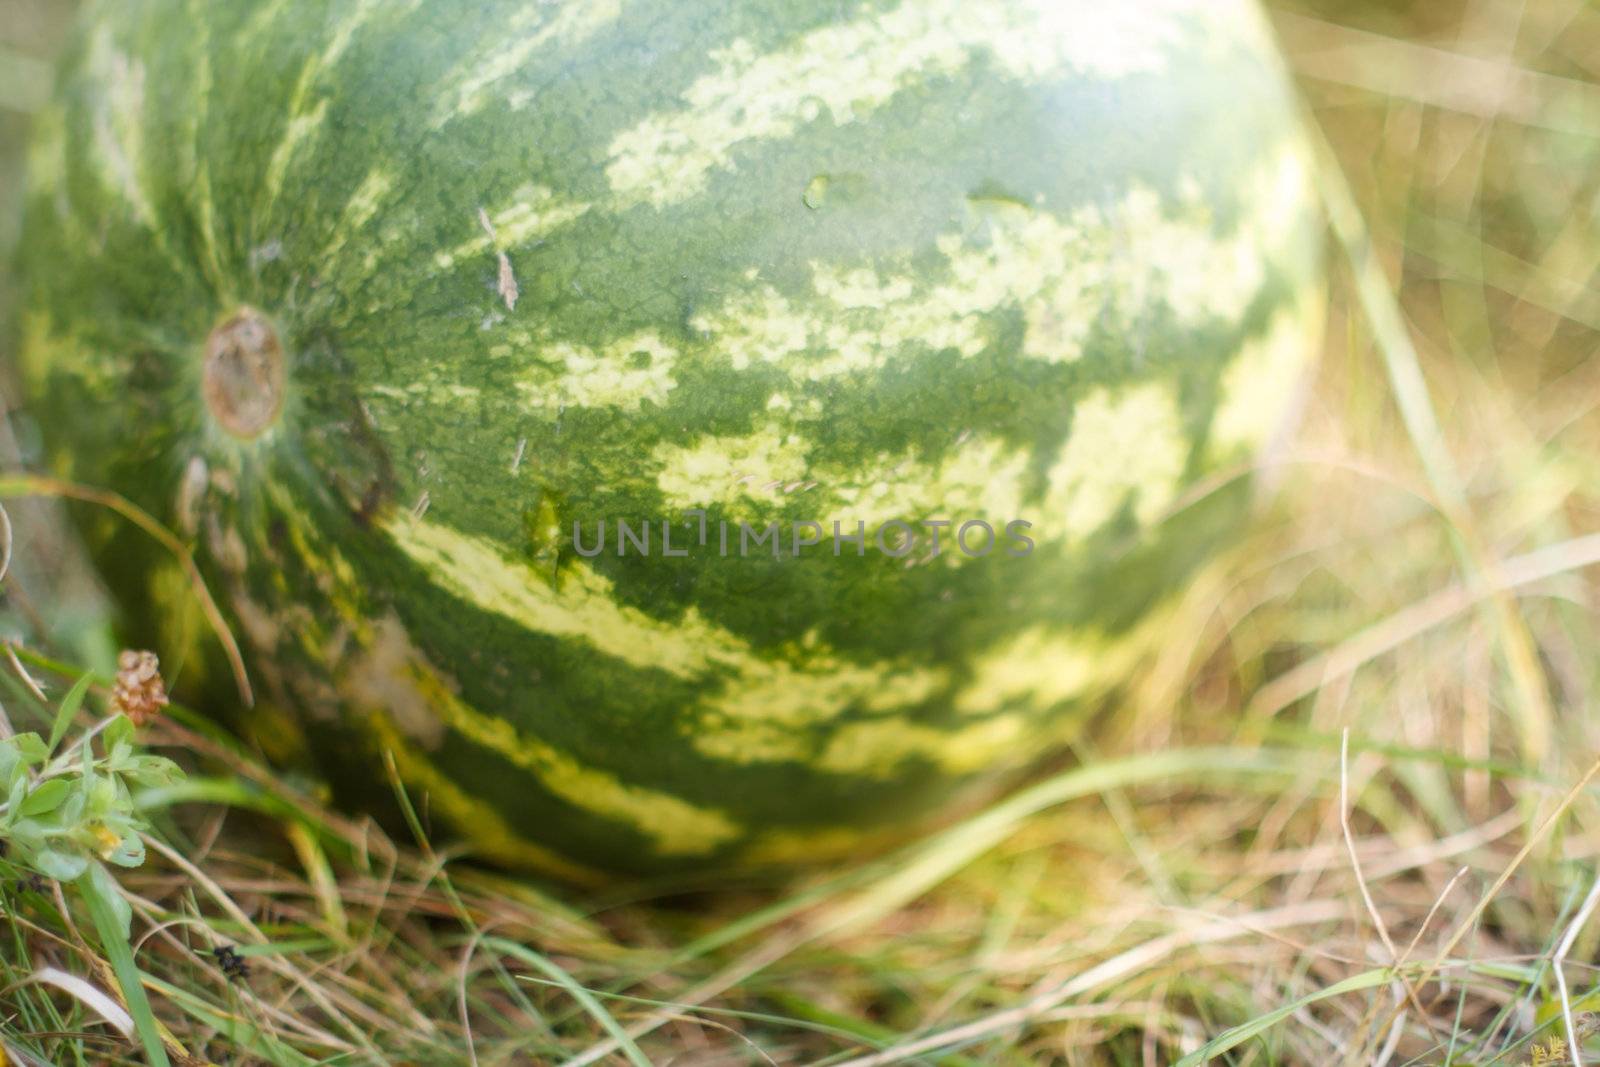 watermelon growing in the field by shebeko